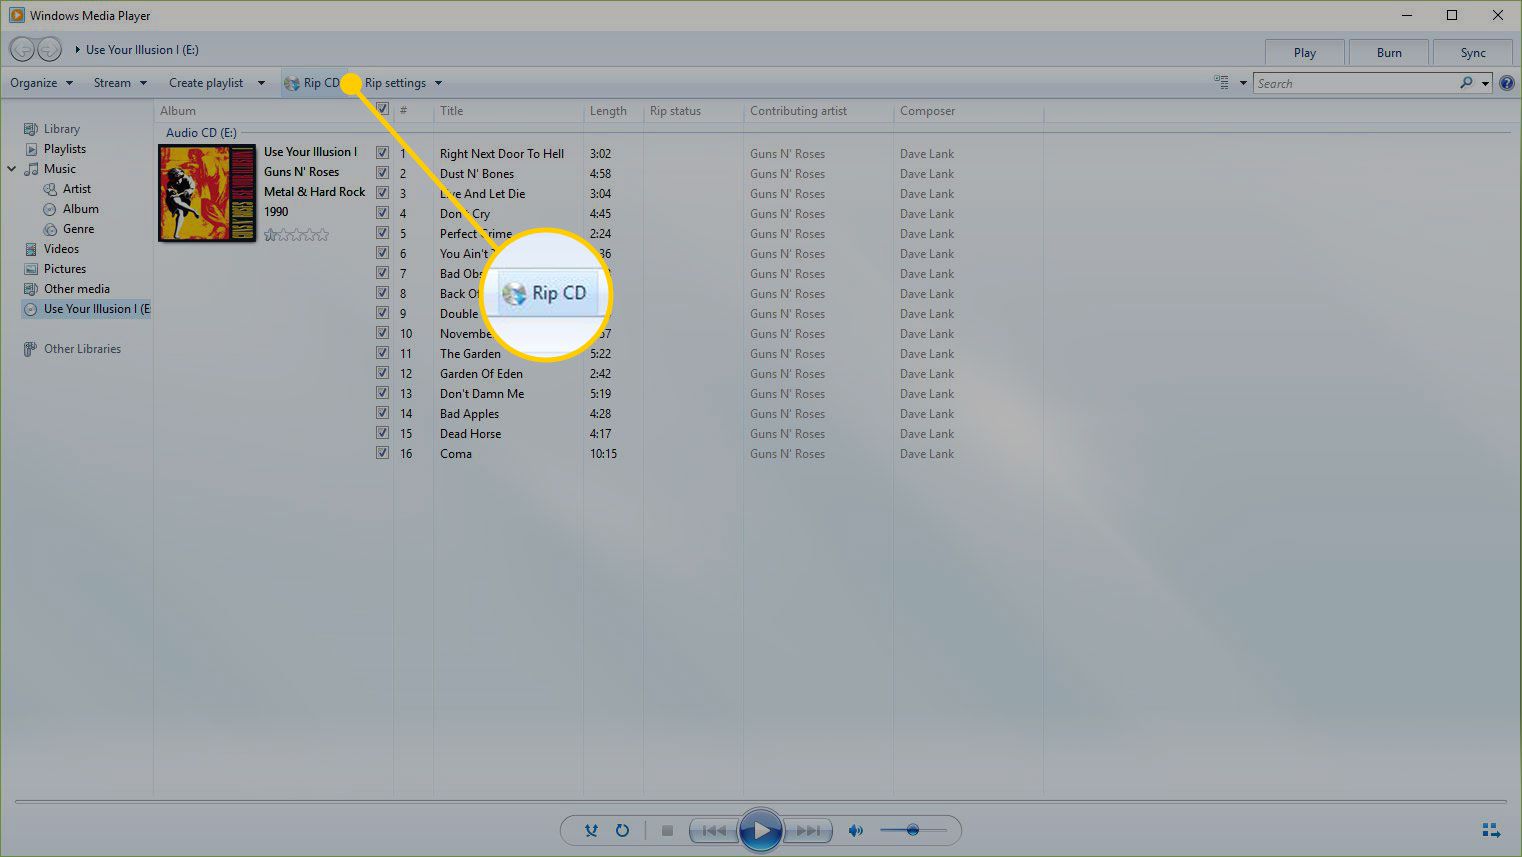 Windows Media Player med Rip CD-knappen markerad